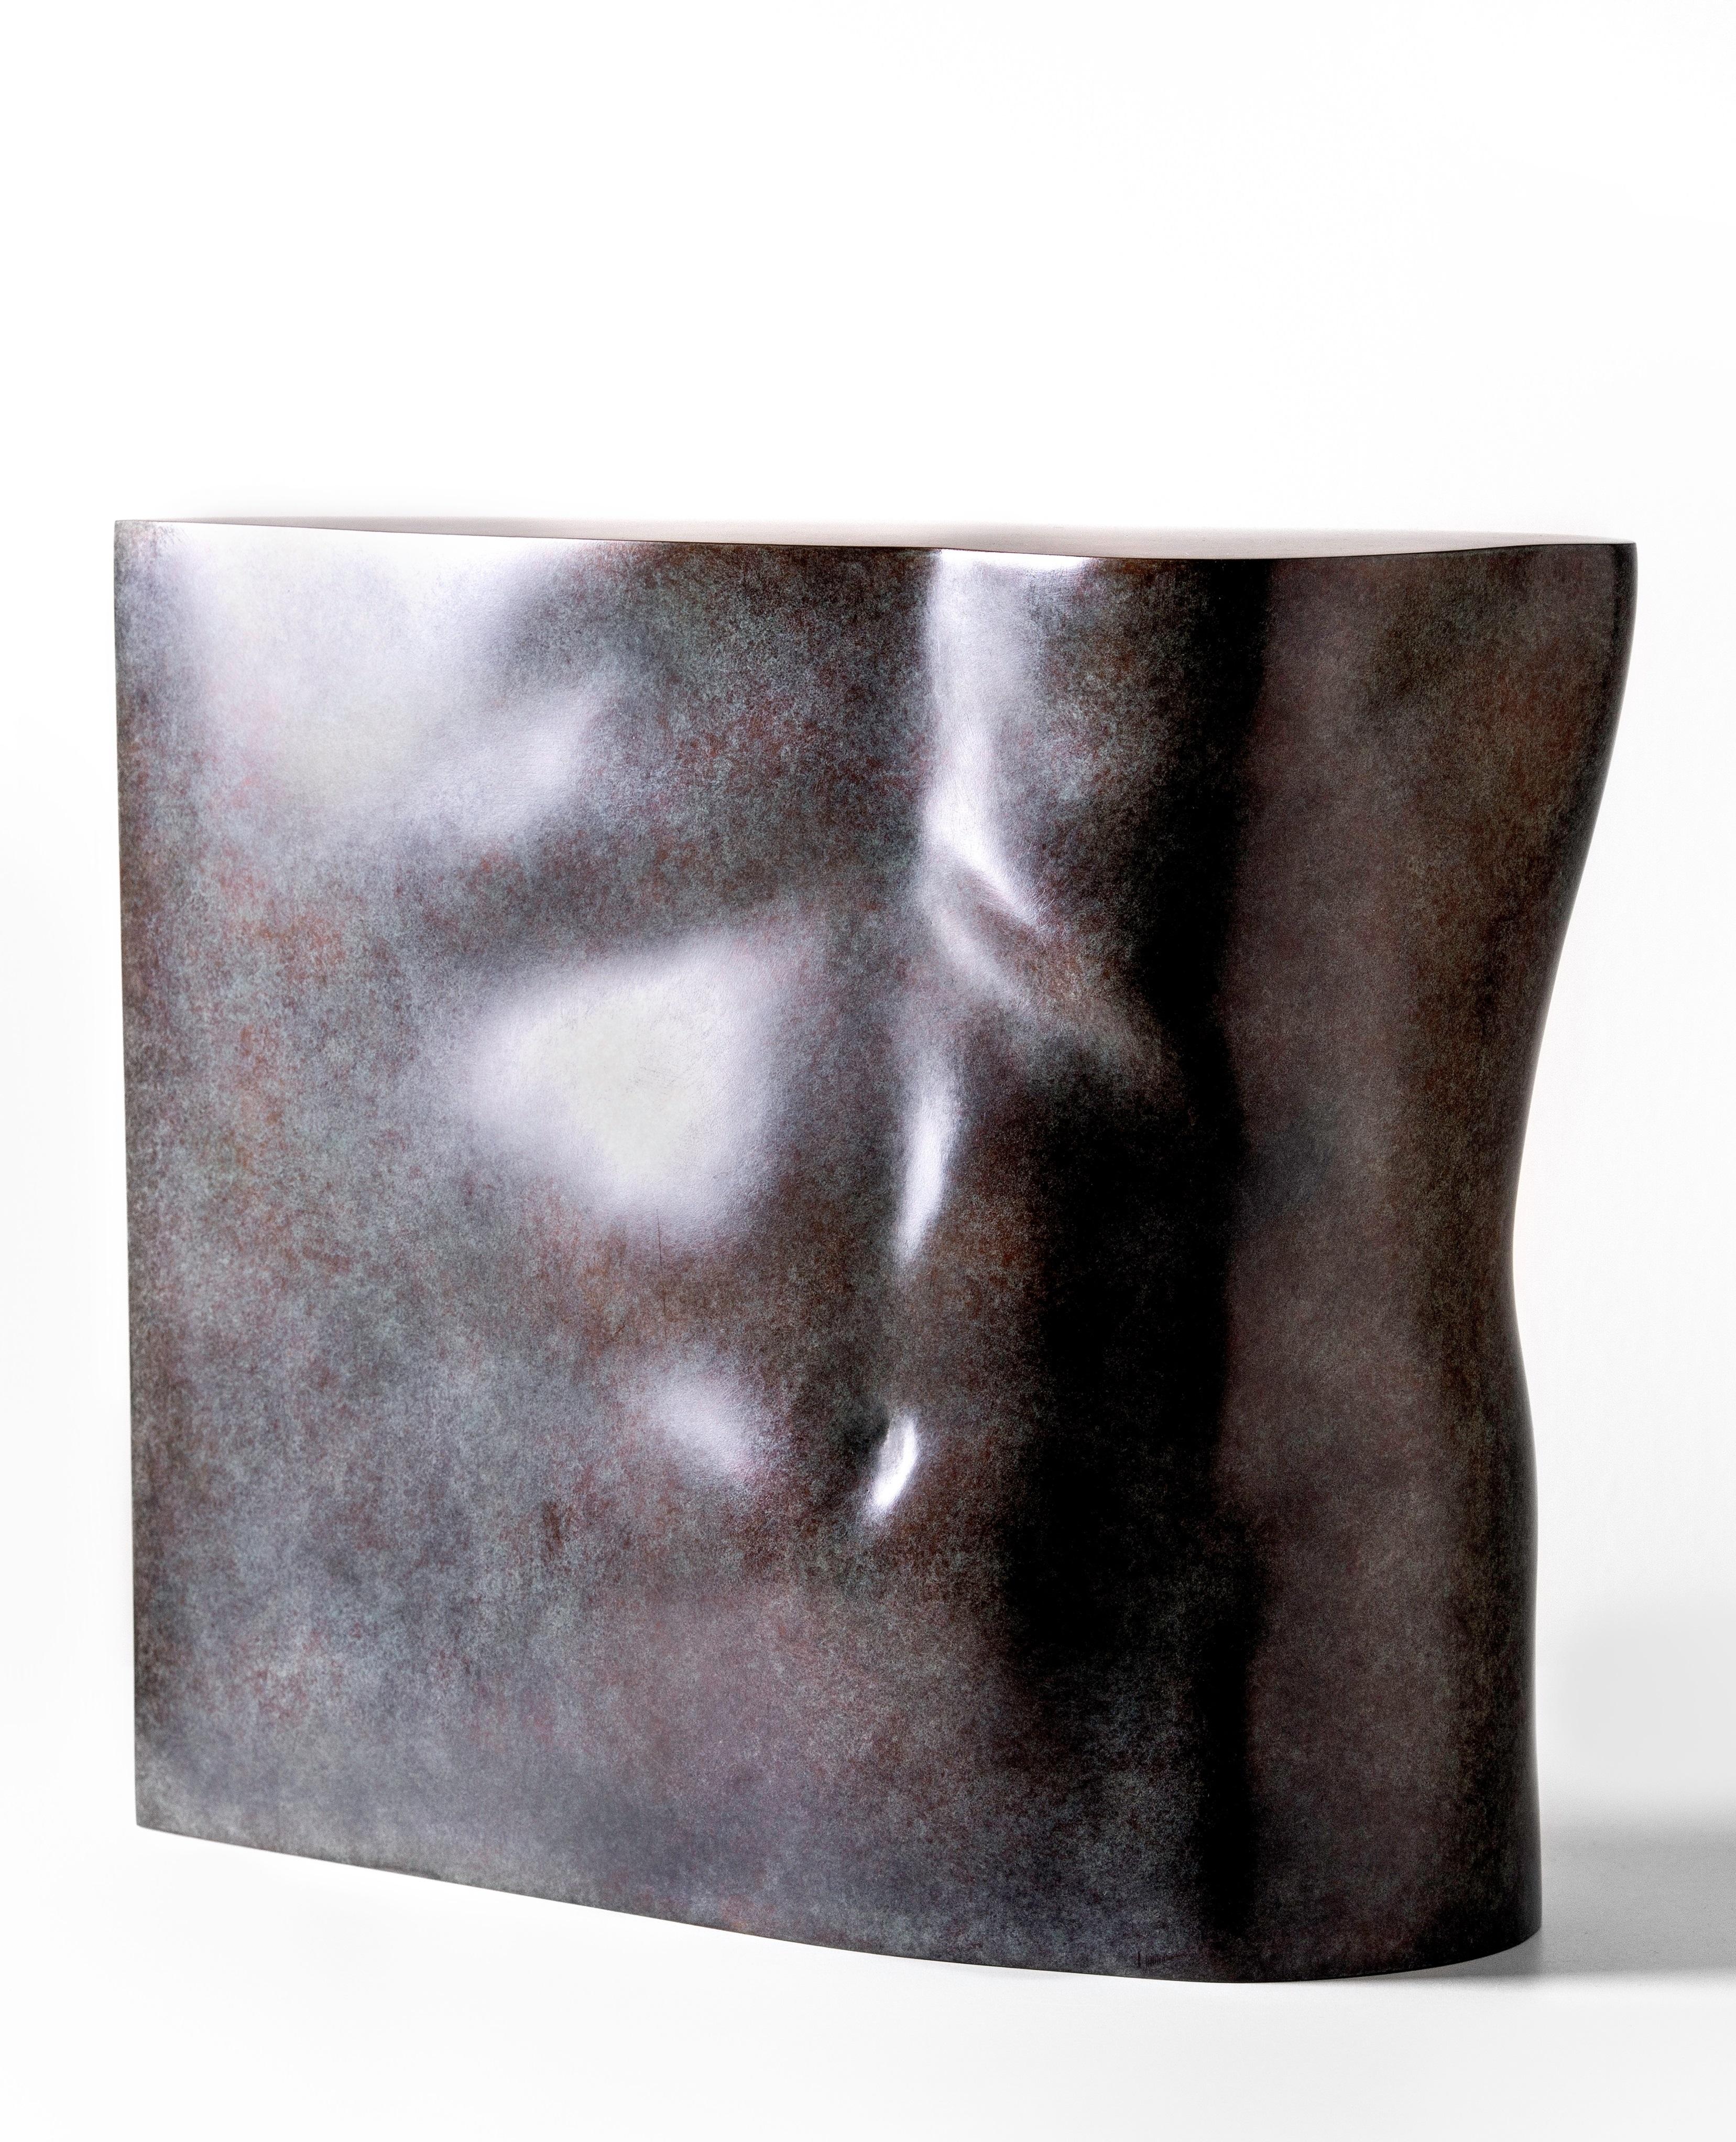 KOBE Nude Sculpture - Torso Maschile Bronze Sculpture Torse Male Nude Torso 